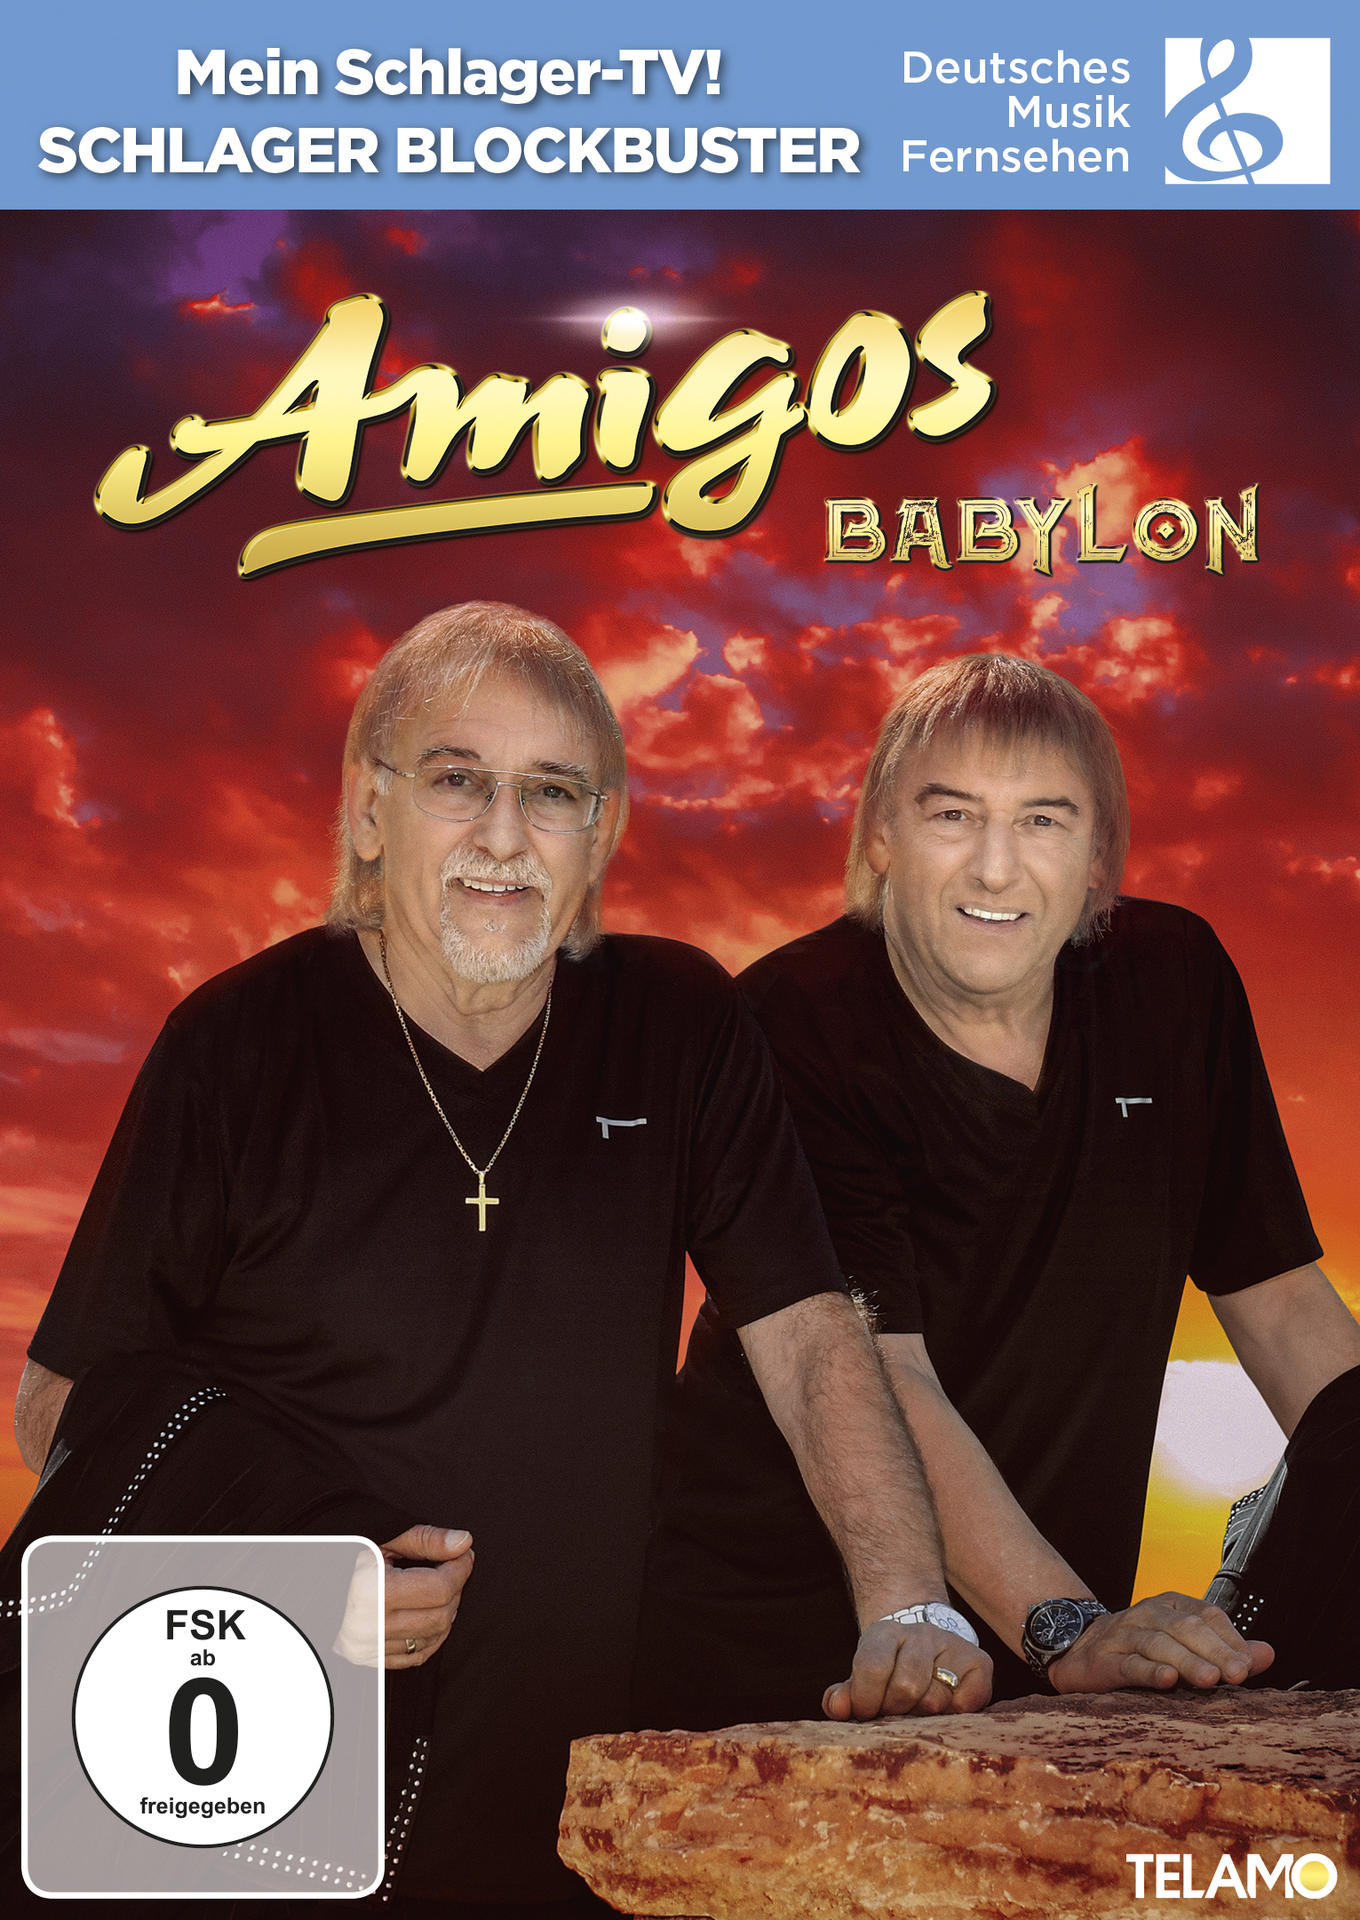 Die Amigos - Babylon - (Clipkollektion) (DVD)